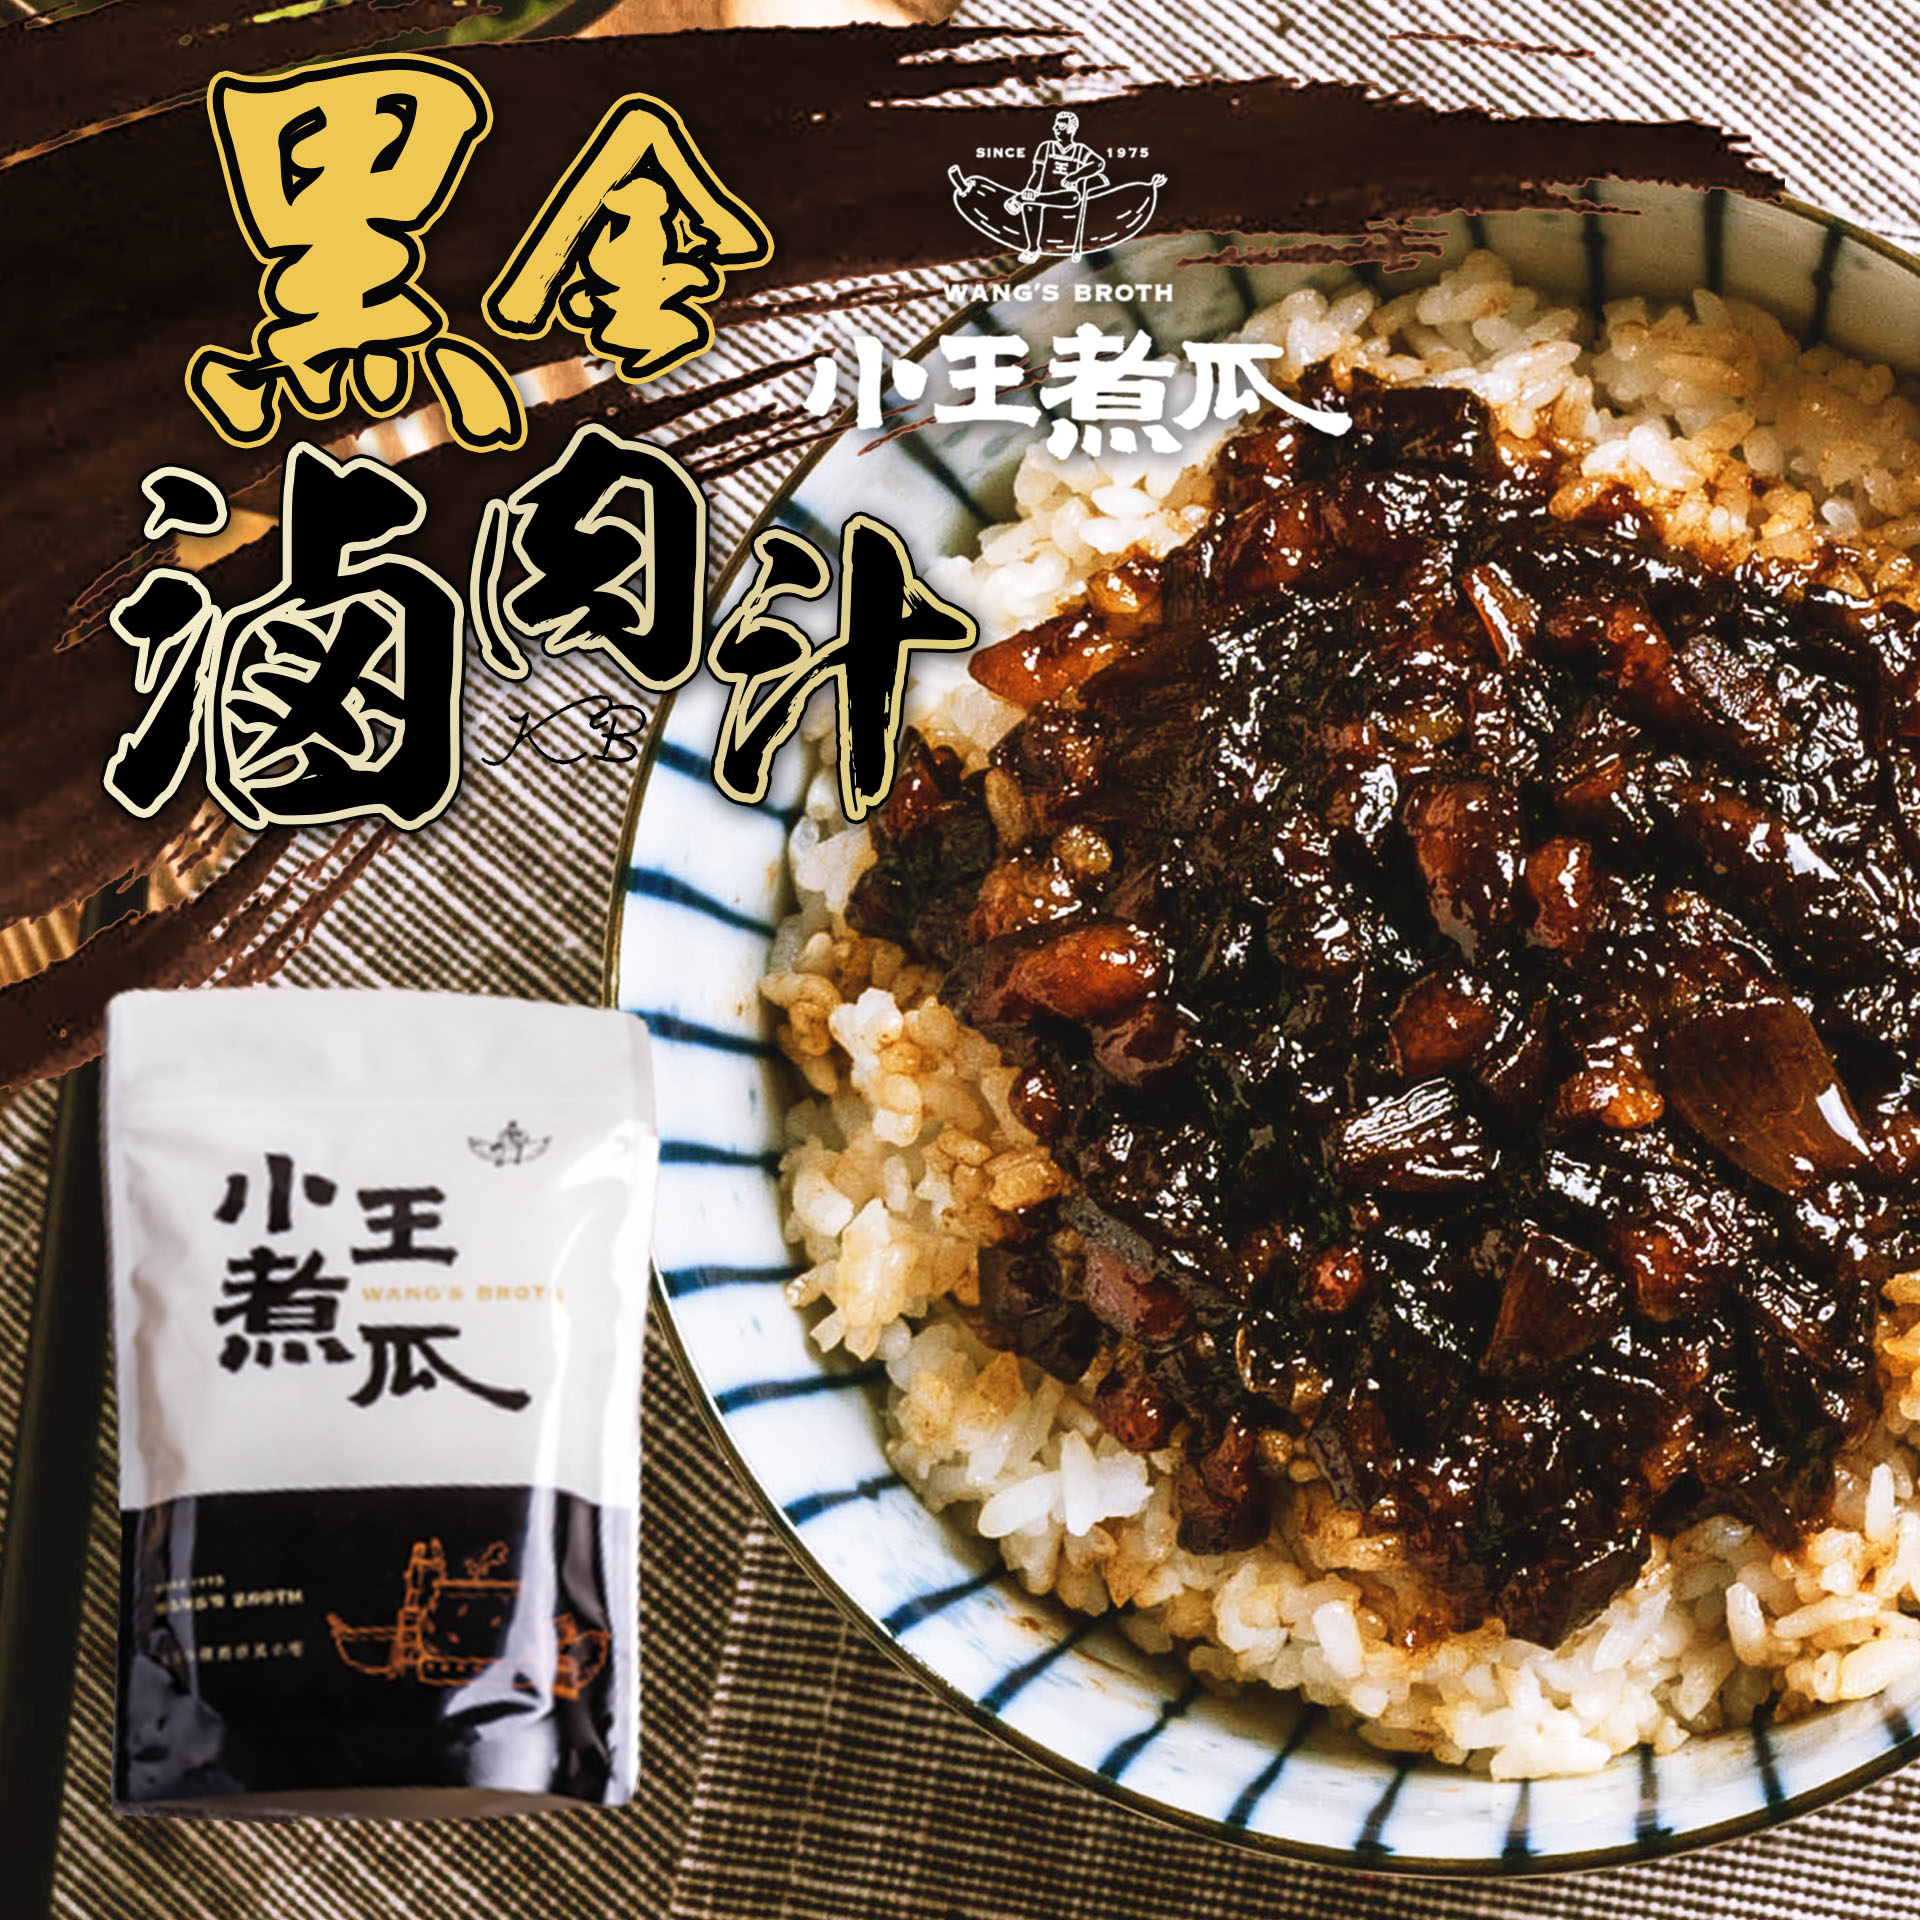 【小王煮瓜】黑金滷肉汁200g(4-6人份/包) 米其林必比登推薦 萬華老店